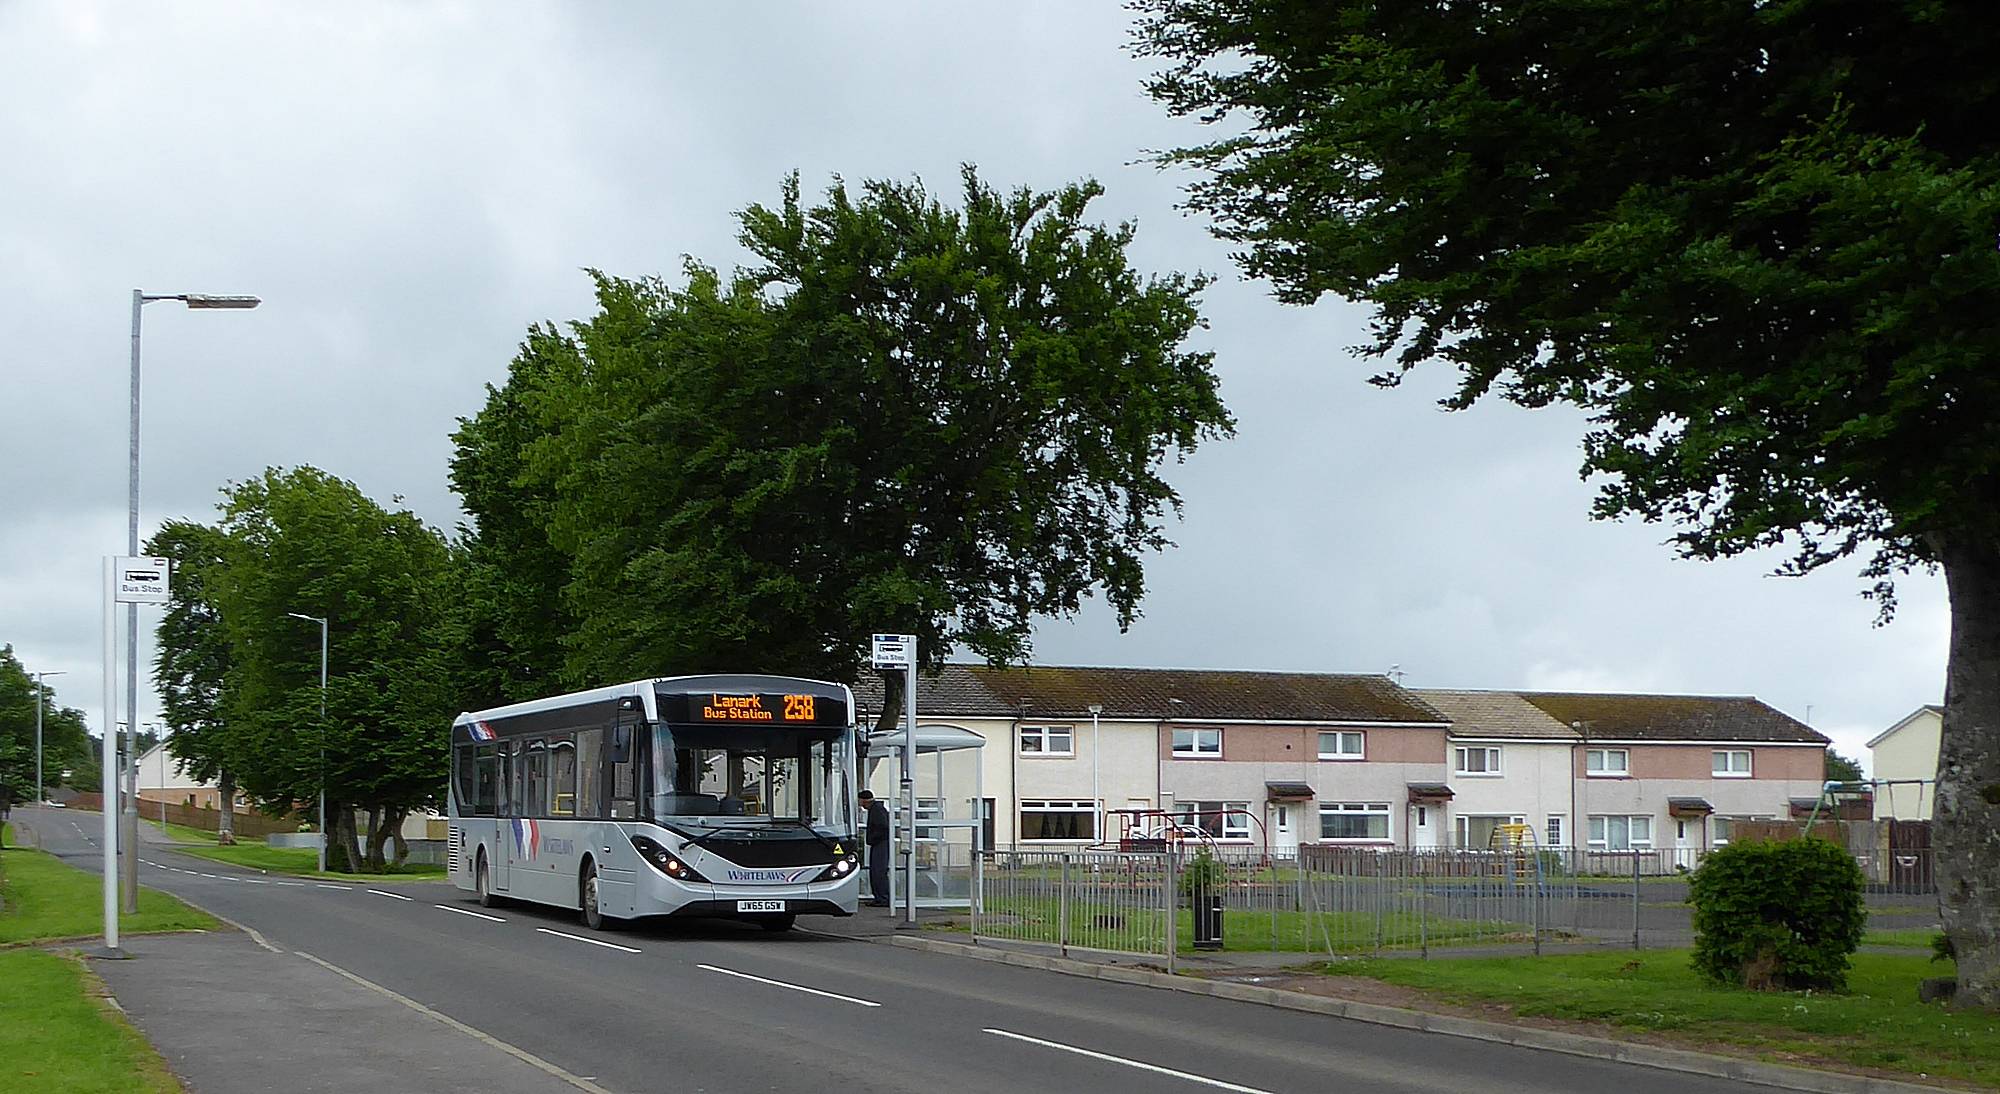 258 Lanark bus in Balgray Road, Lesmahagow